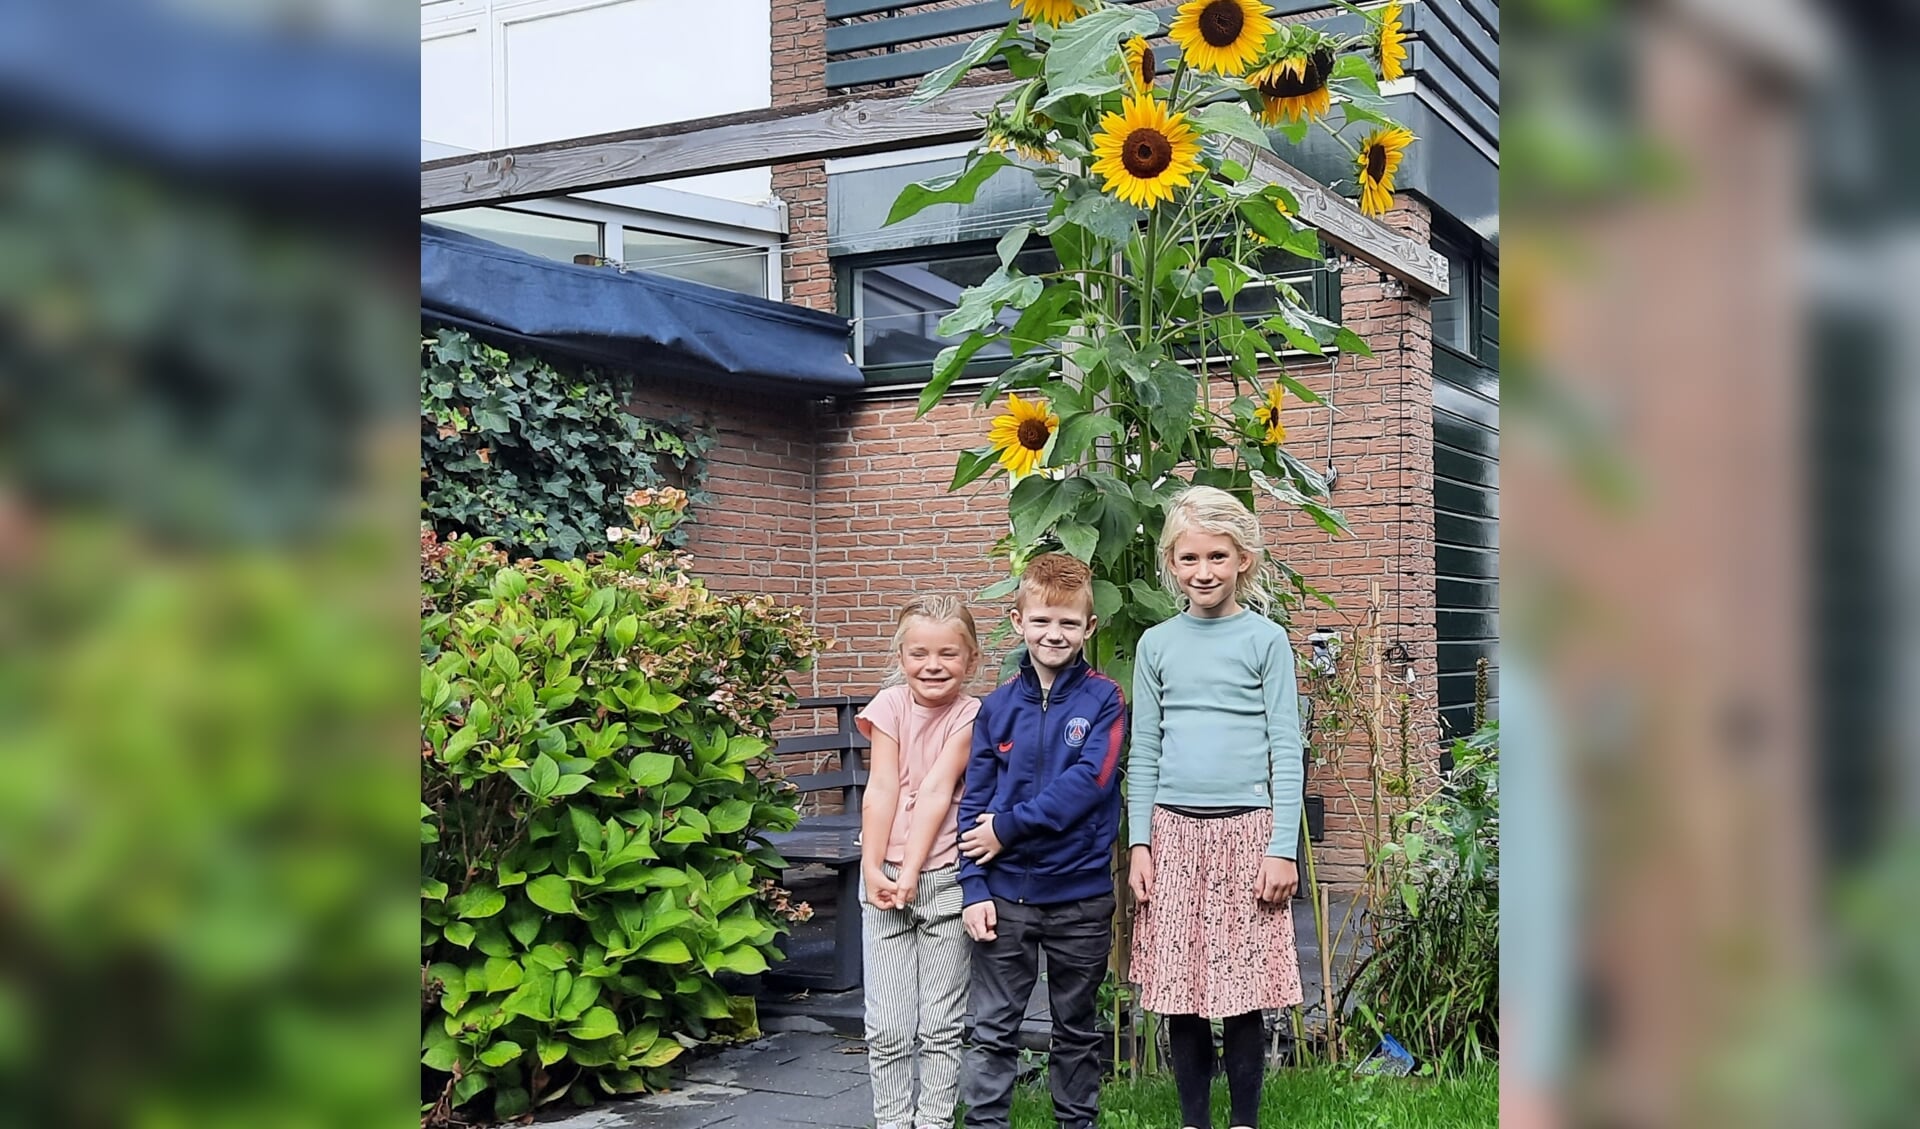 De winnaars van de zonnebloemwedstrijd van Duurzaam op Dreef met v.l.n.r Lynn Horling, Tijme Klaver en Nyla Horlings. Zoë van Veen ontbreekt op de foto.